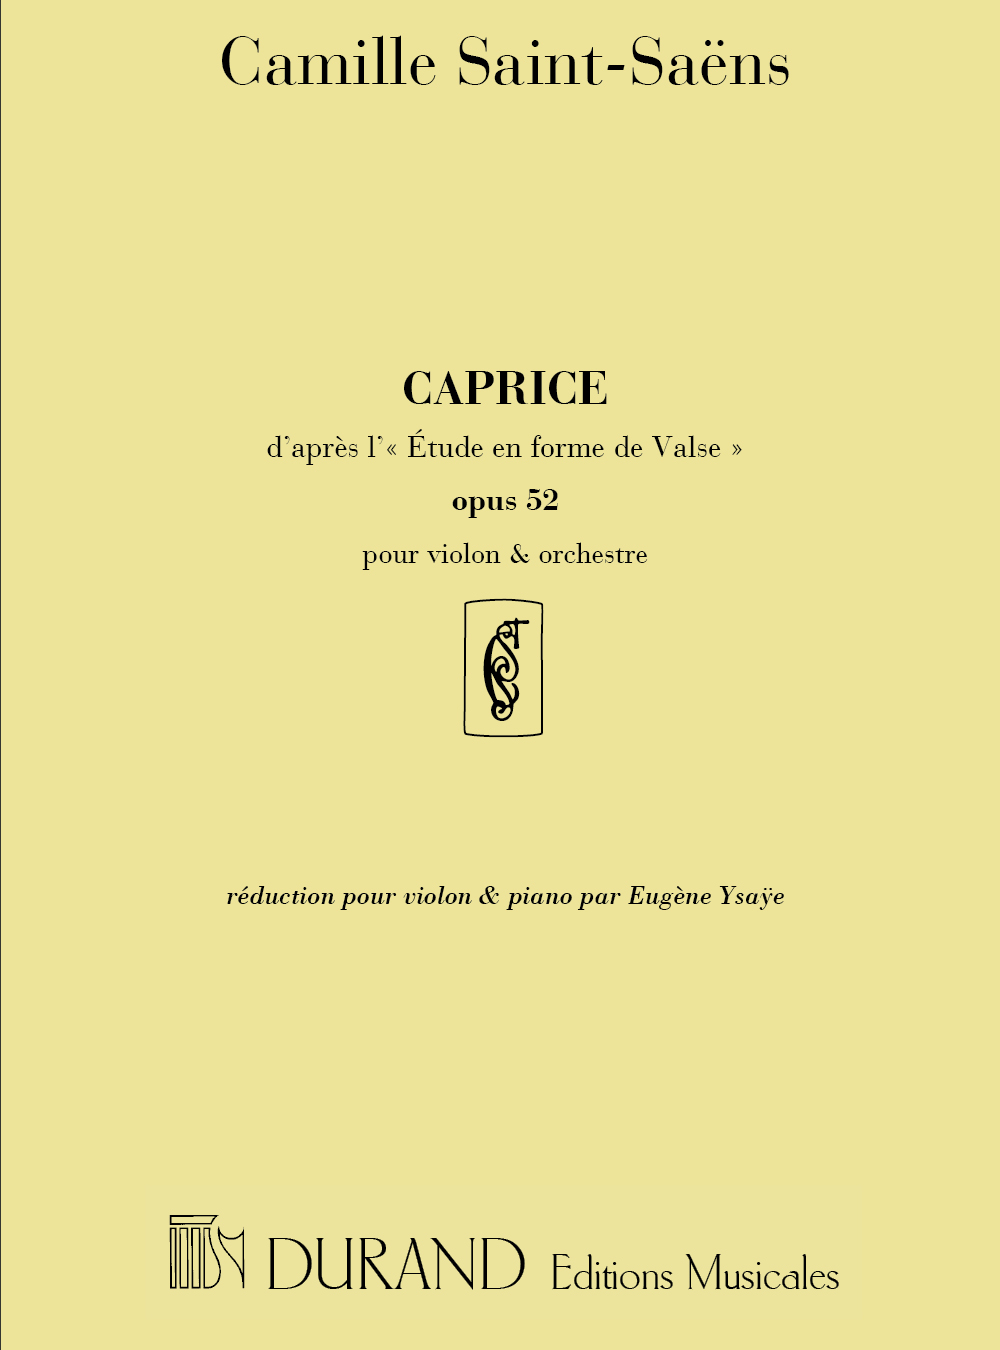 Camille Saint-Sans: Caprice d'apres l'etude en forme de Valse opus 52: Violin